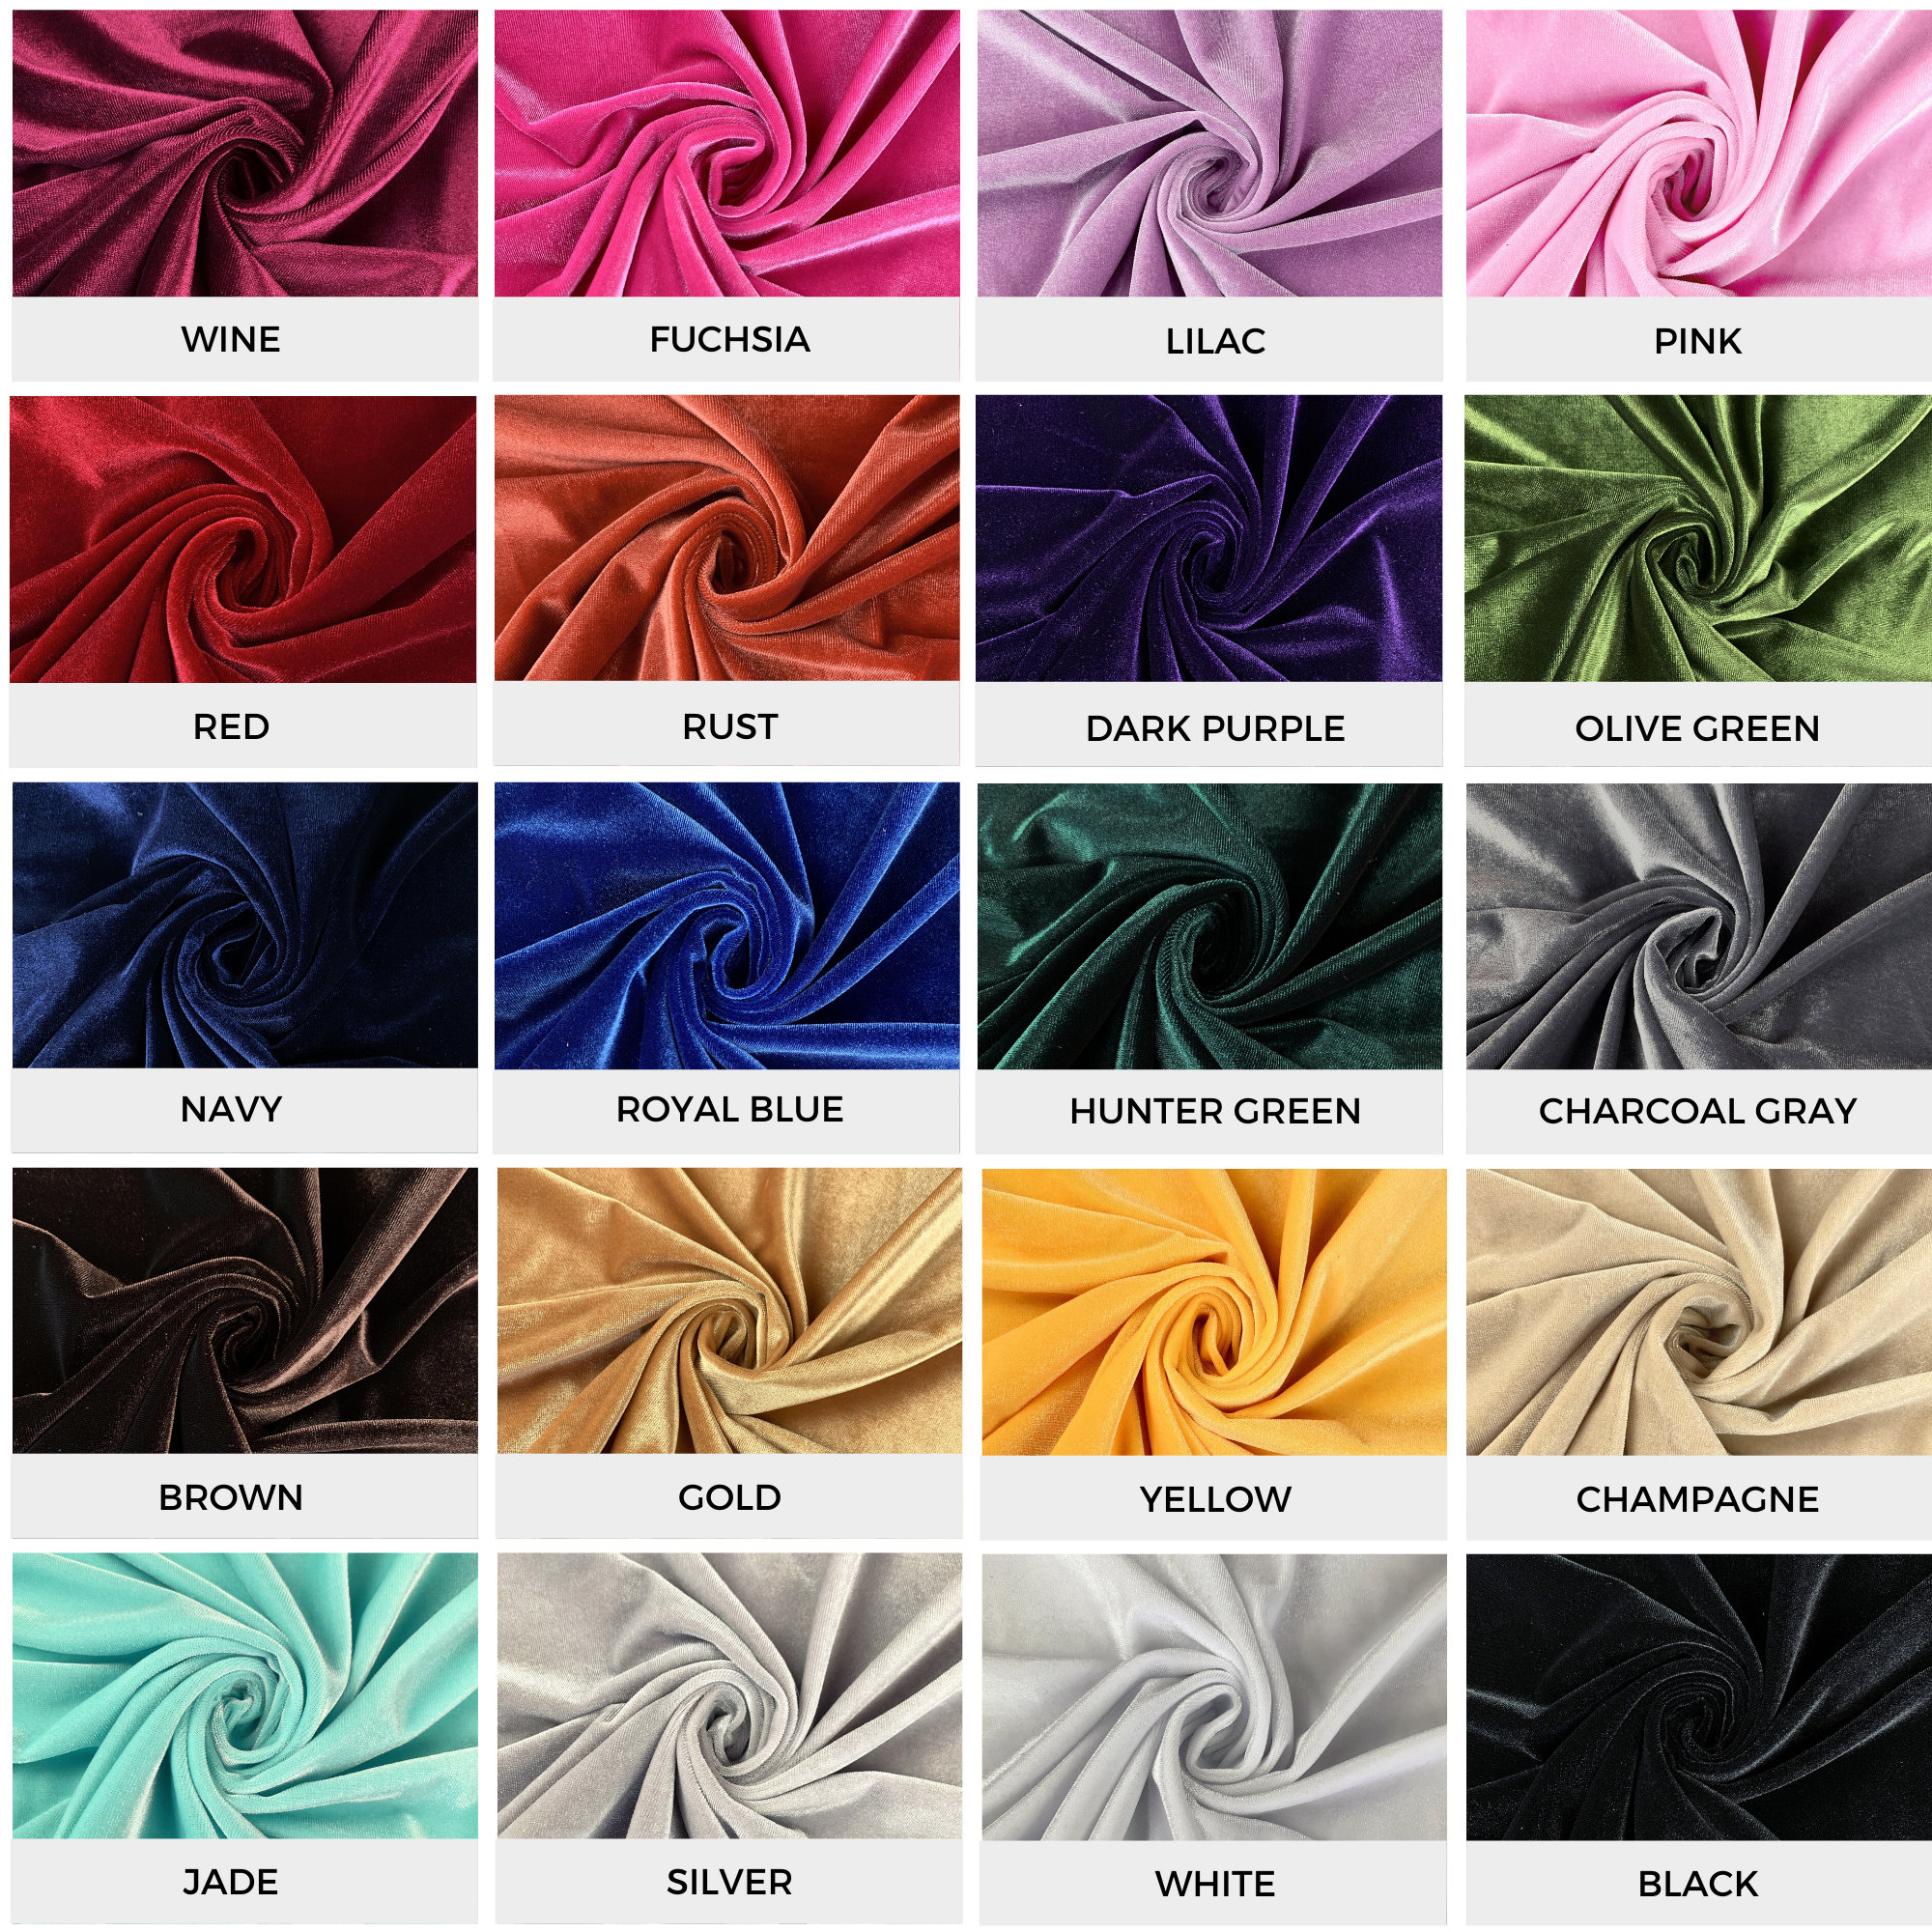 Velvet Upholstery Fabric Como 104 Camel